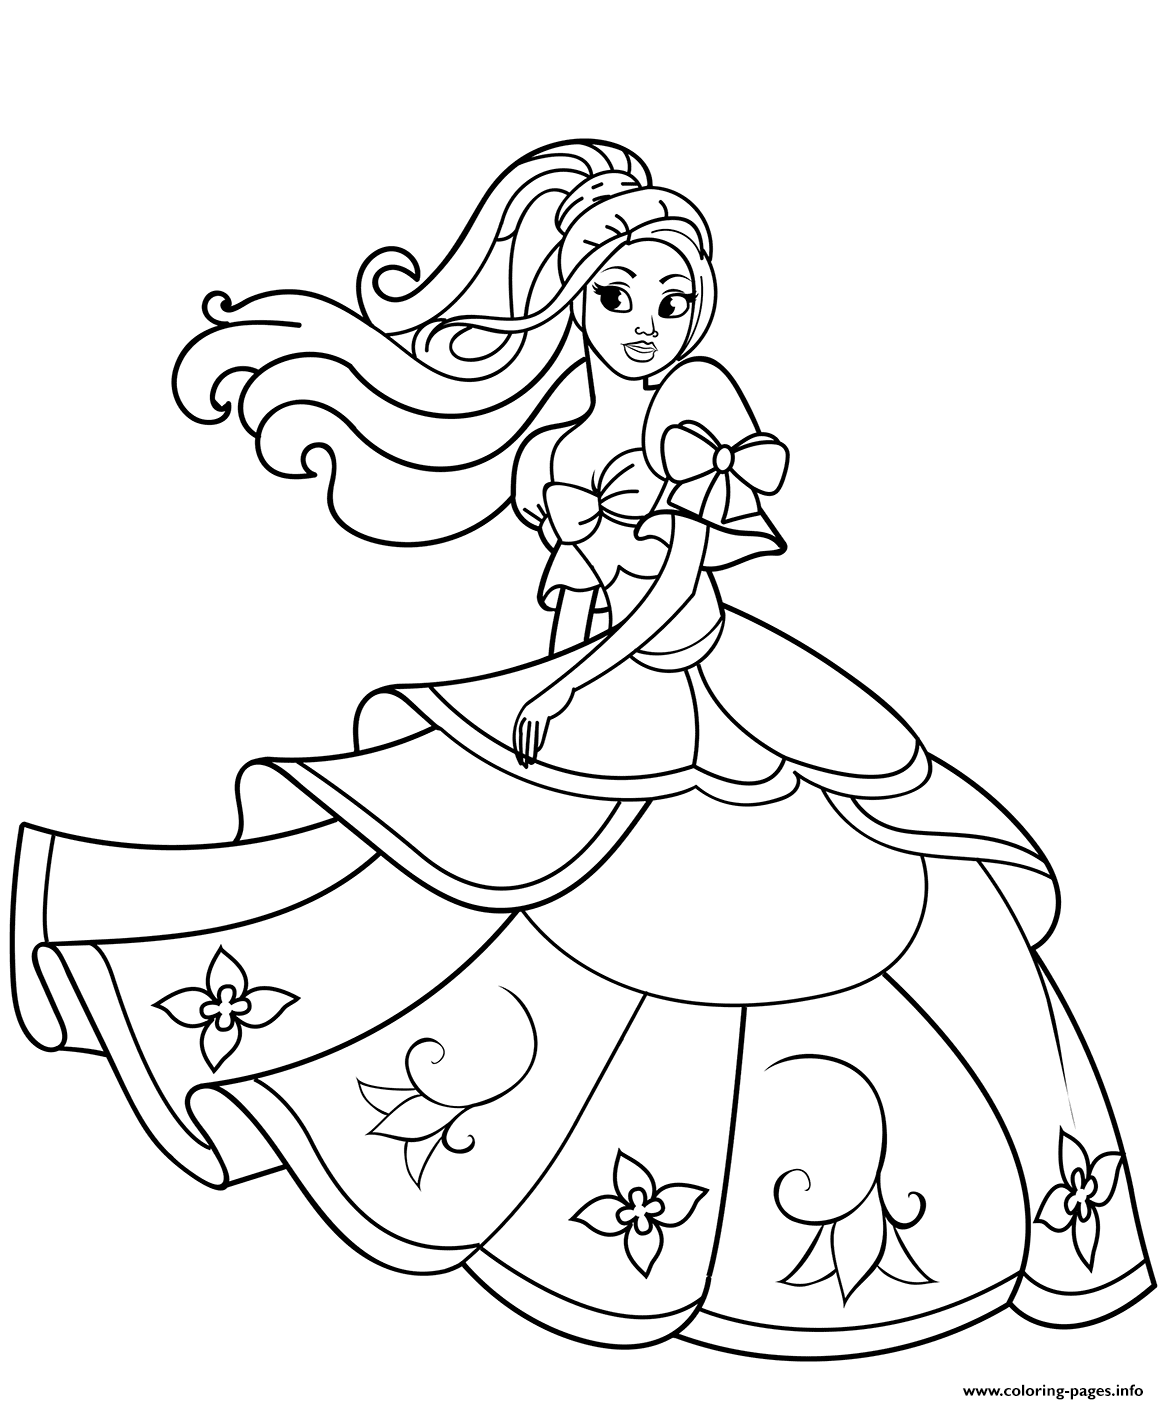 Dancing Barbie Princess coloring